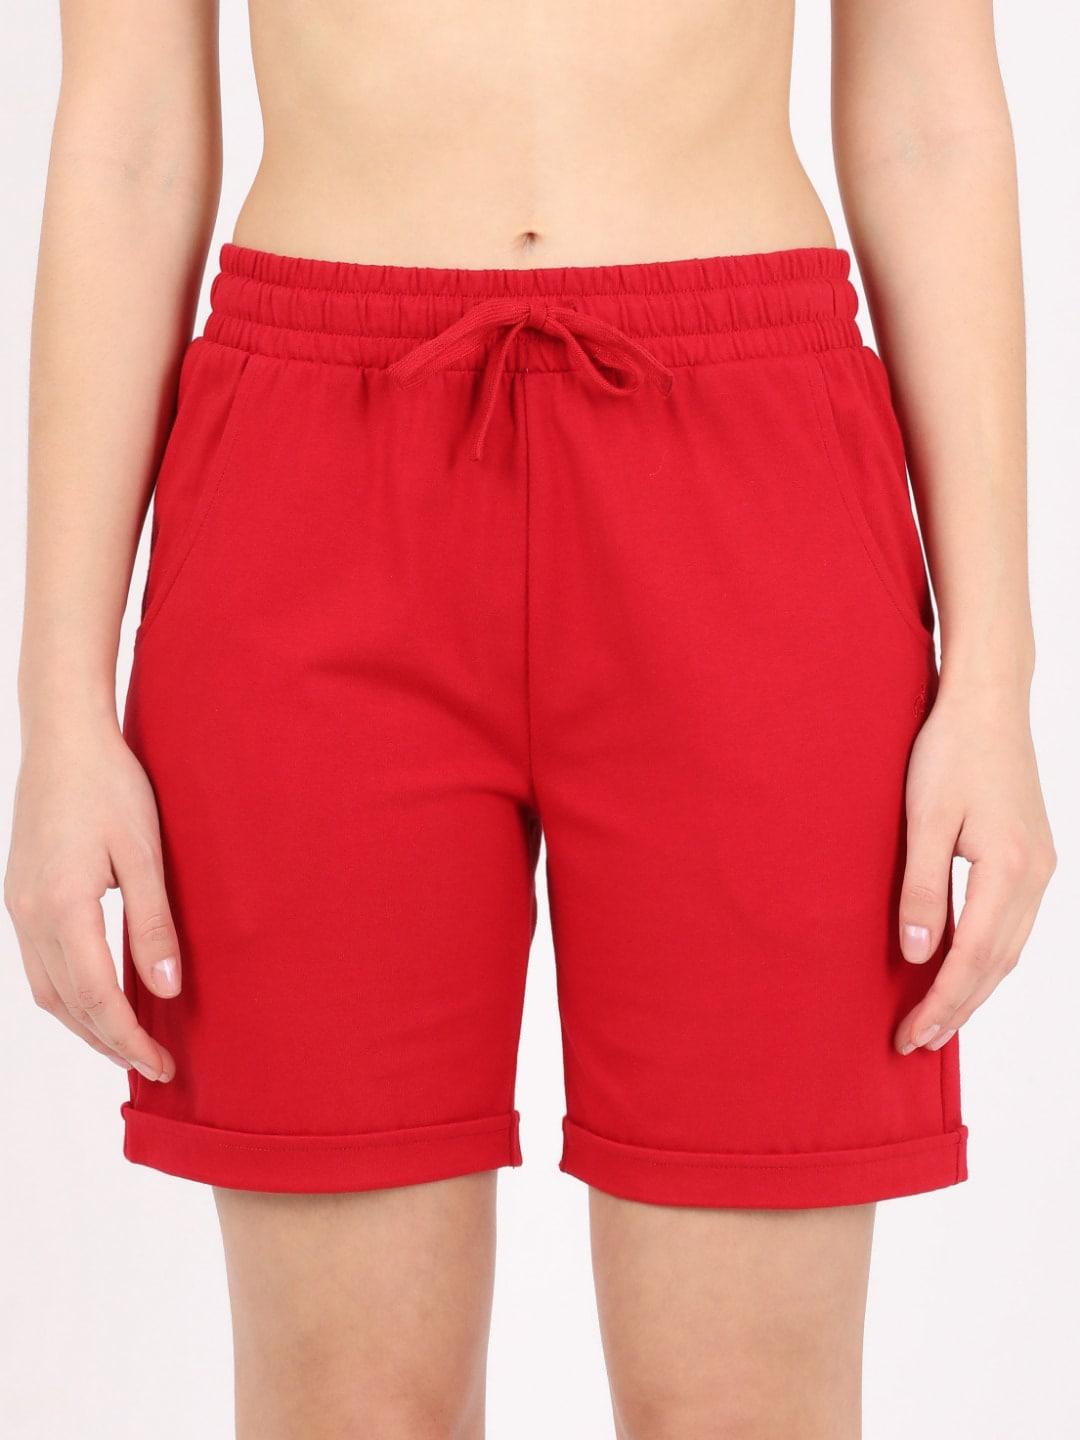 Jockey Women Red Cotton Lounge Shorts